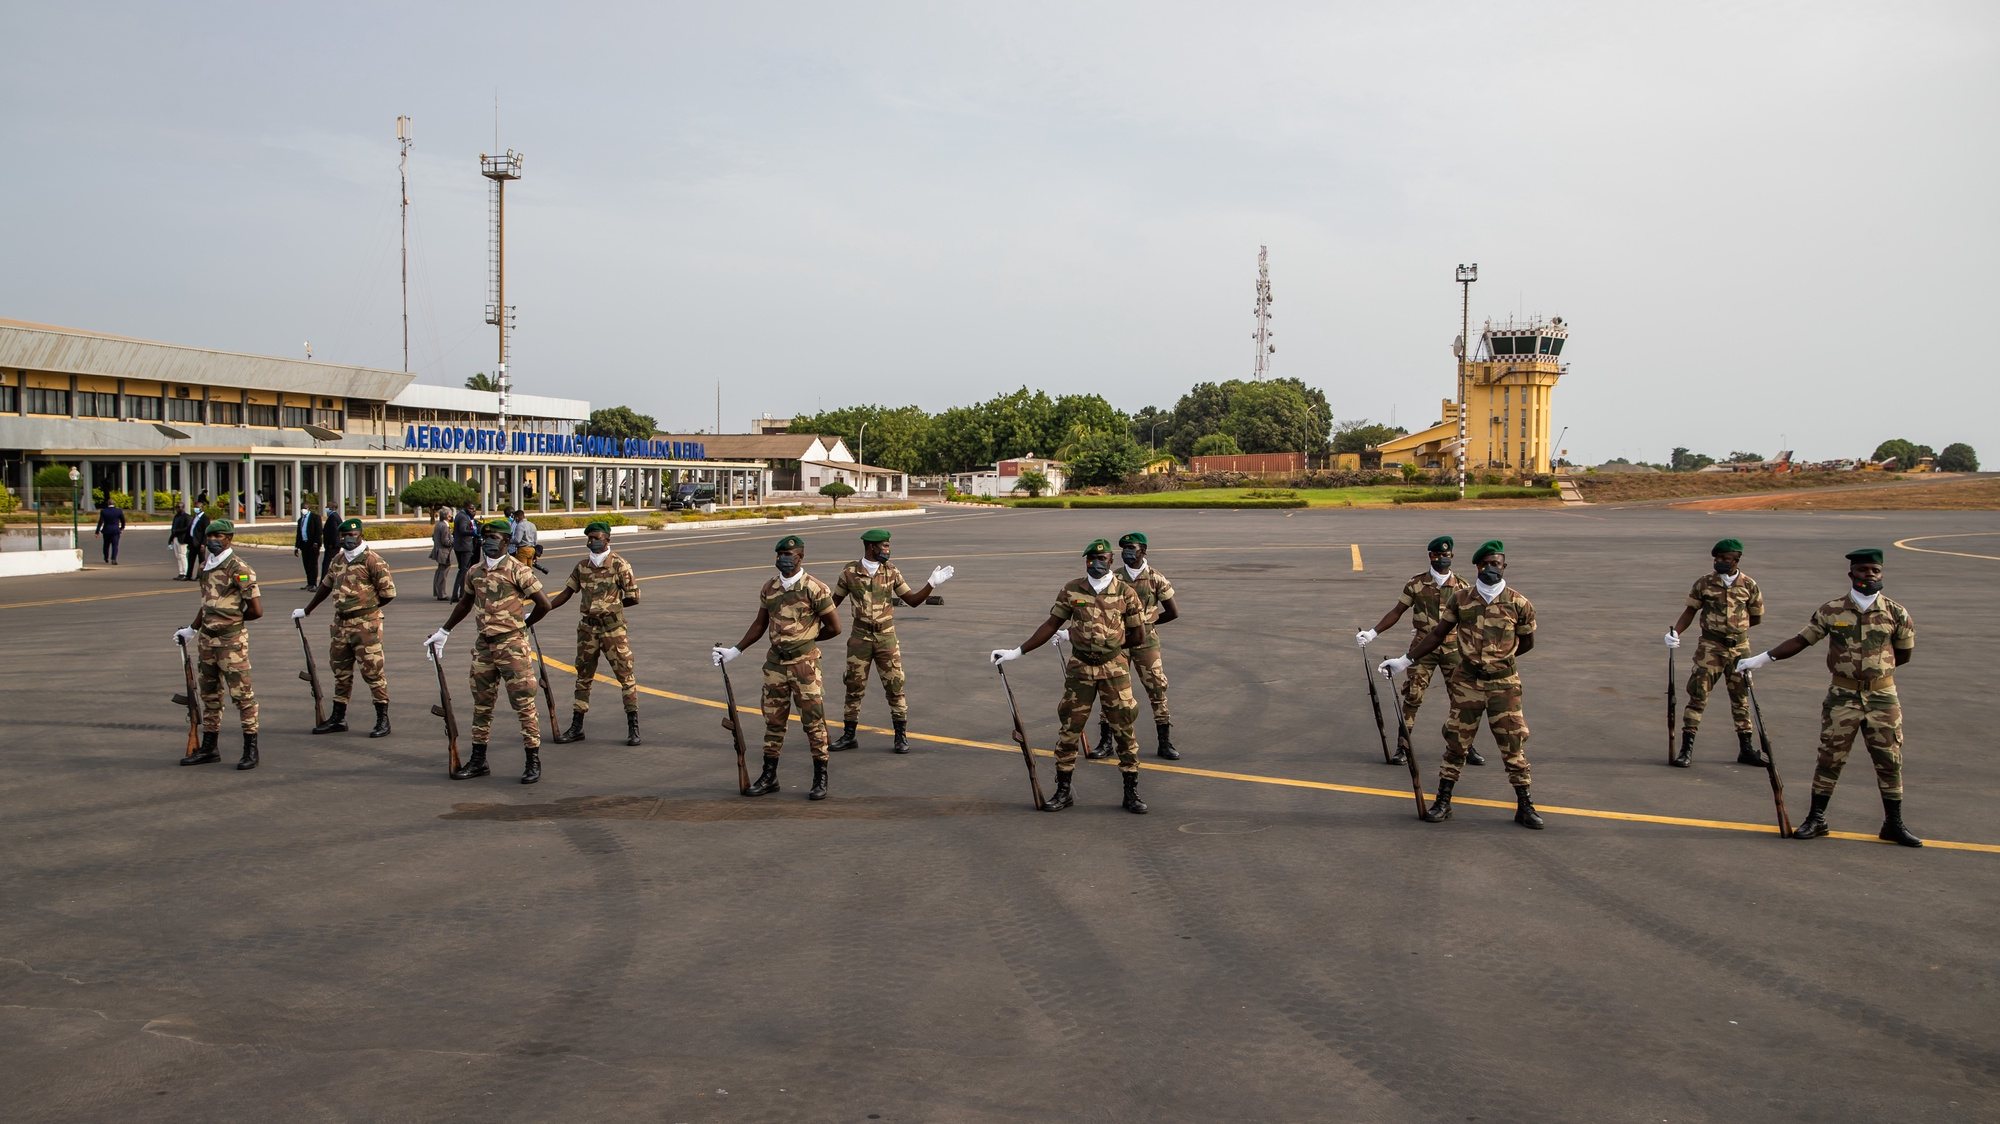 Militares no Aeroporto Internacional Osvaldo Vieira, em Bissau, na Guiné-Bissau, 15 de maio de 2021. JOSÉ SENA GOULÃO/LUSA